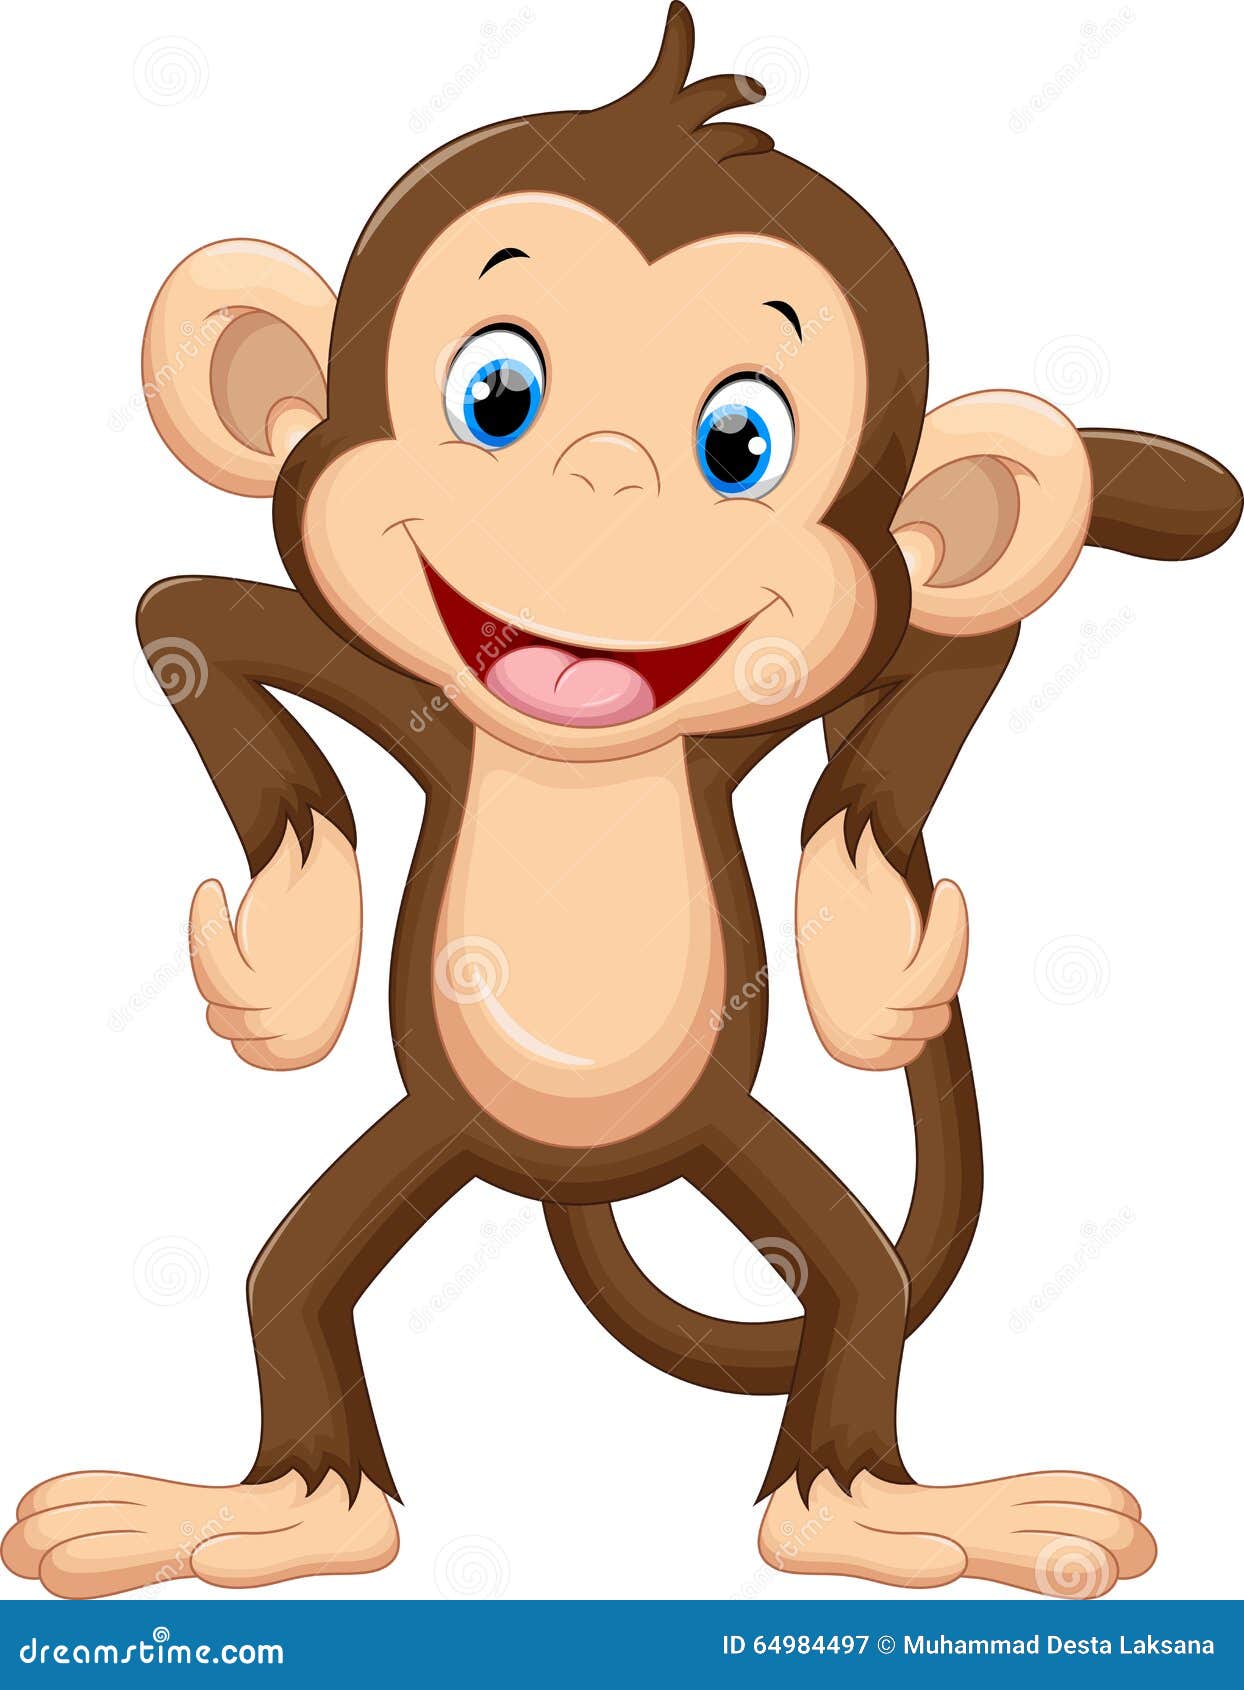 Cute monkey cartoon stock illustration. Illustration of ...